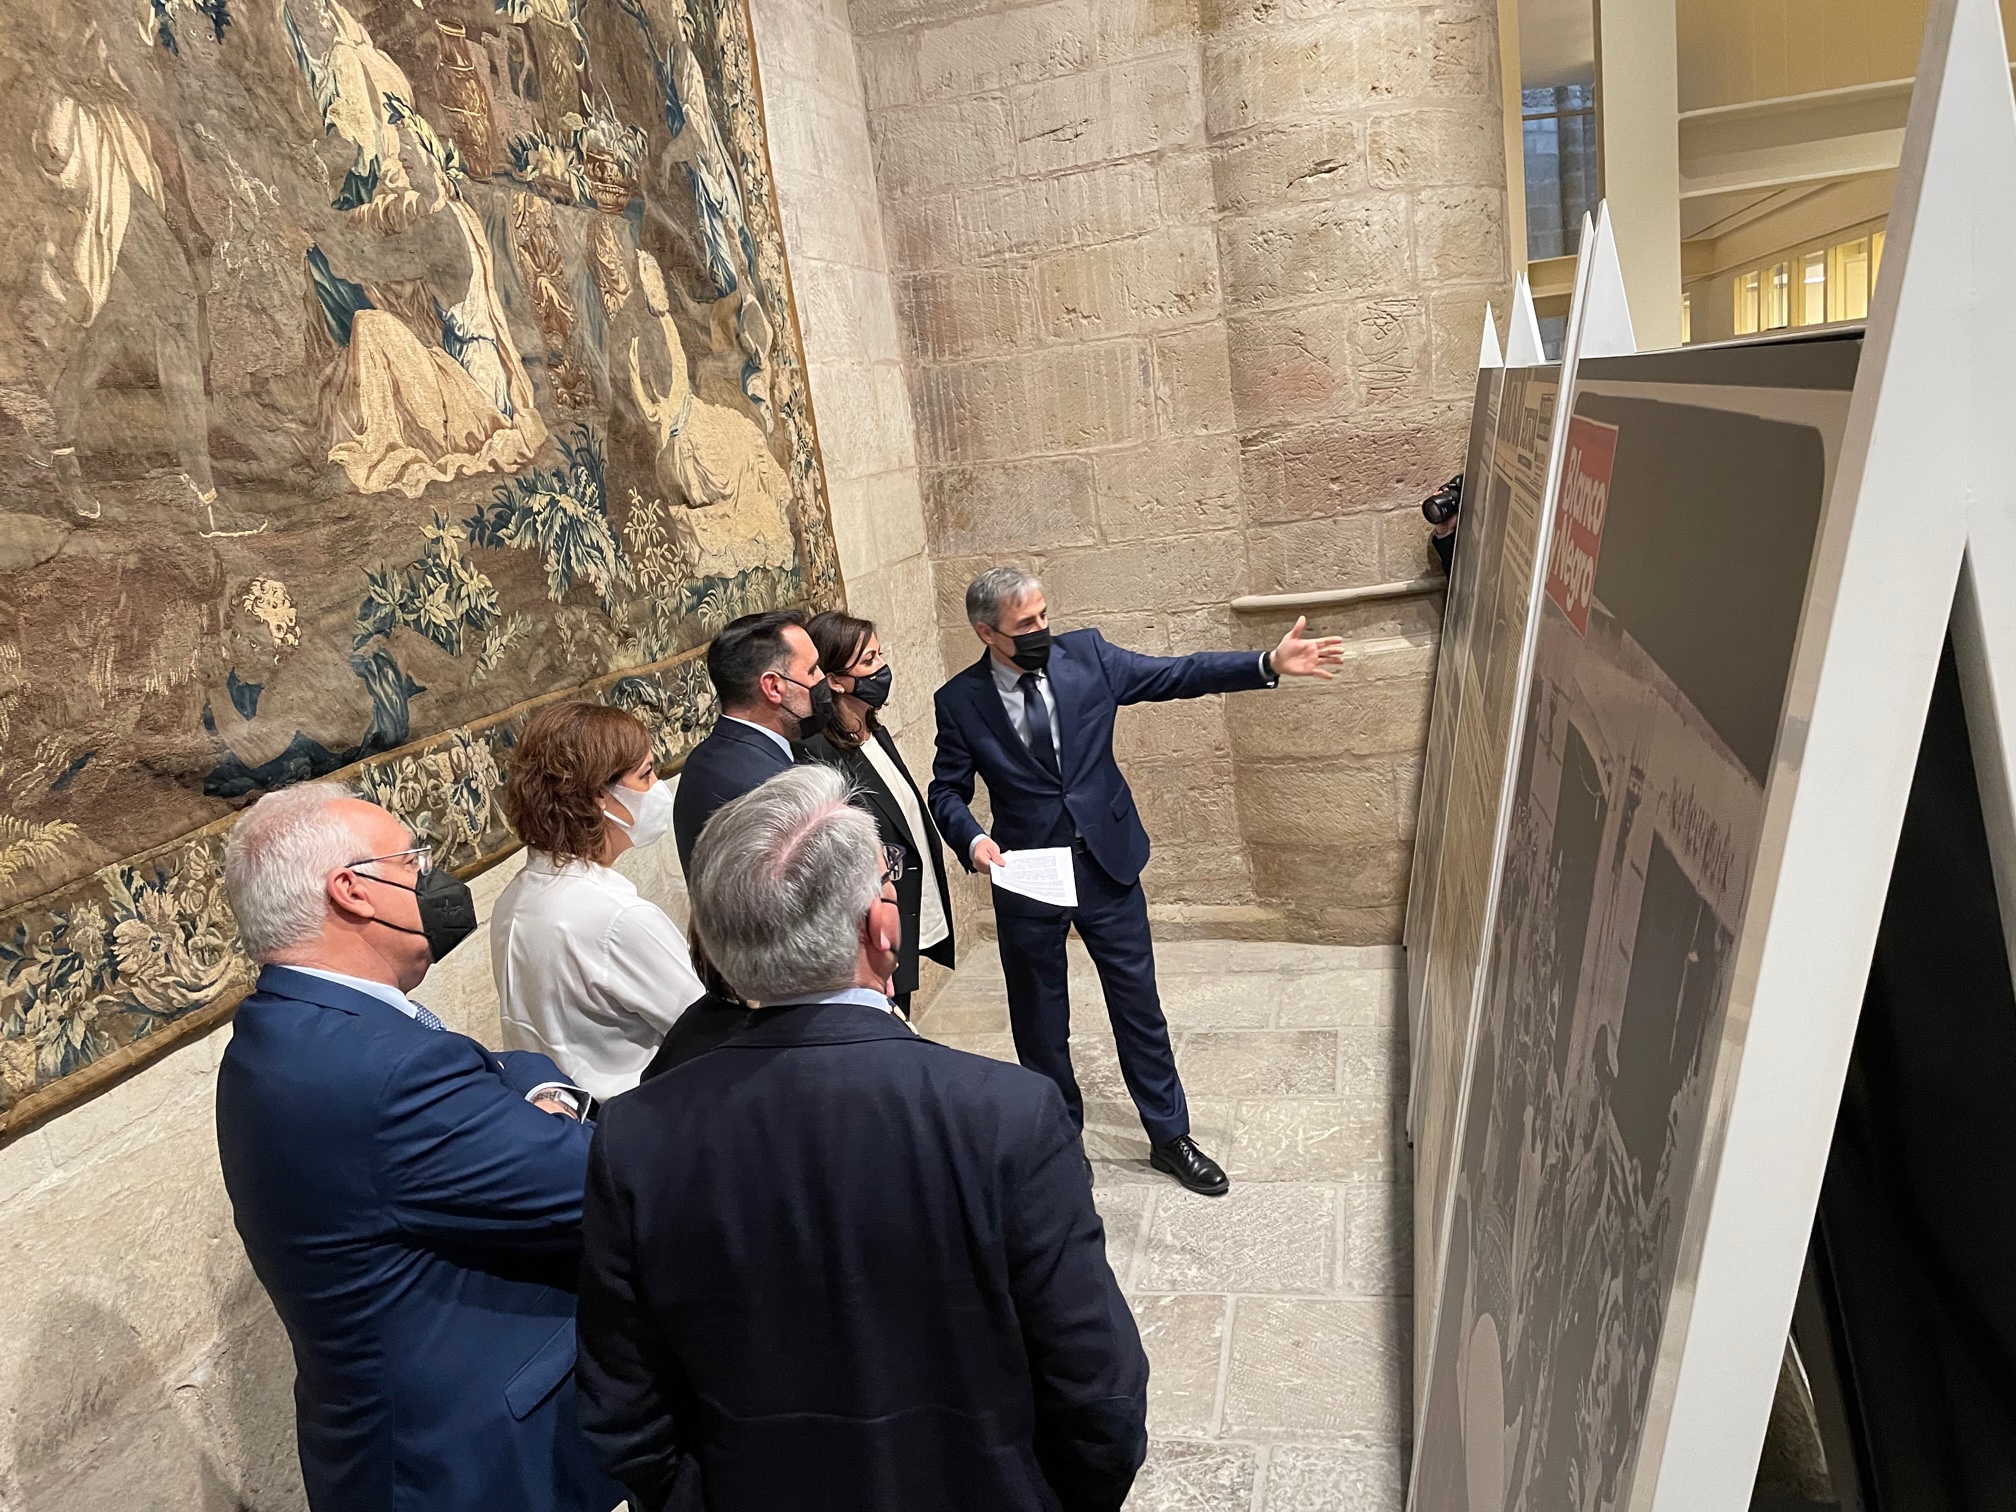 El Parlamento De La Rioja Acoge La Exposición “El Terror A Portada”